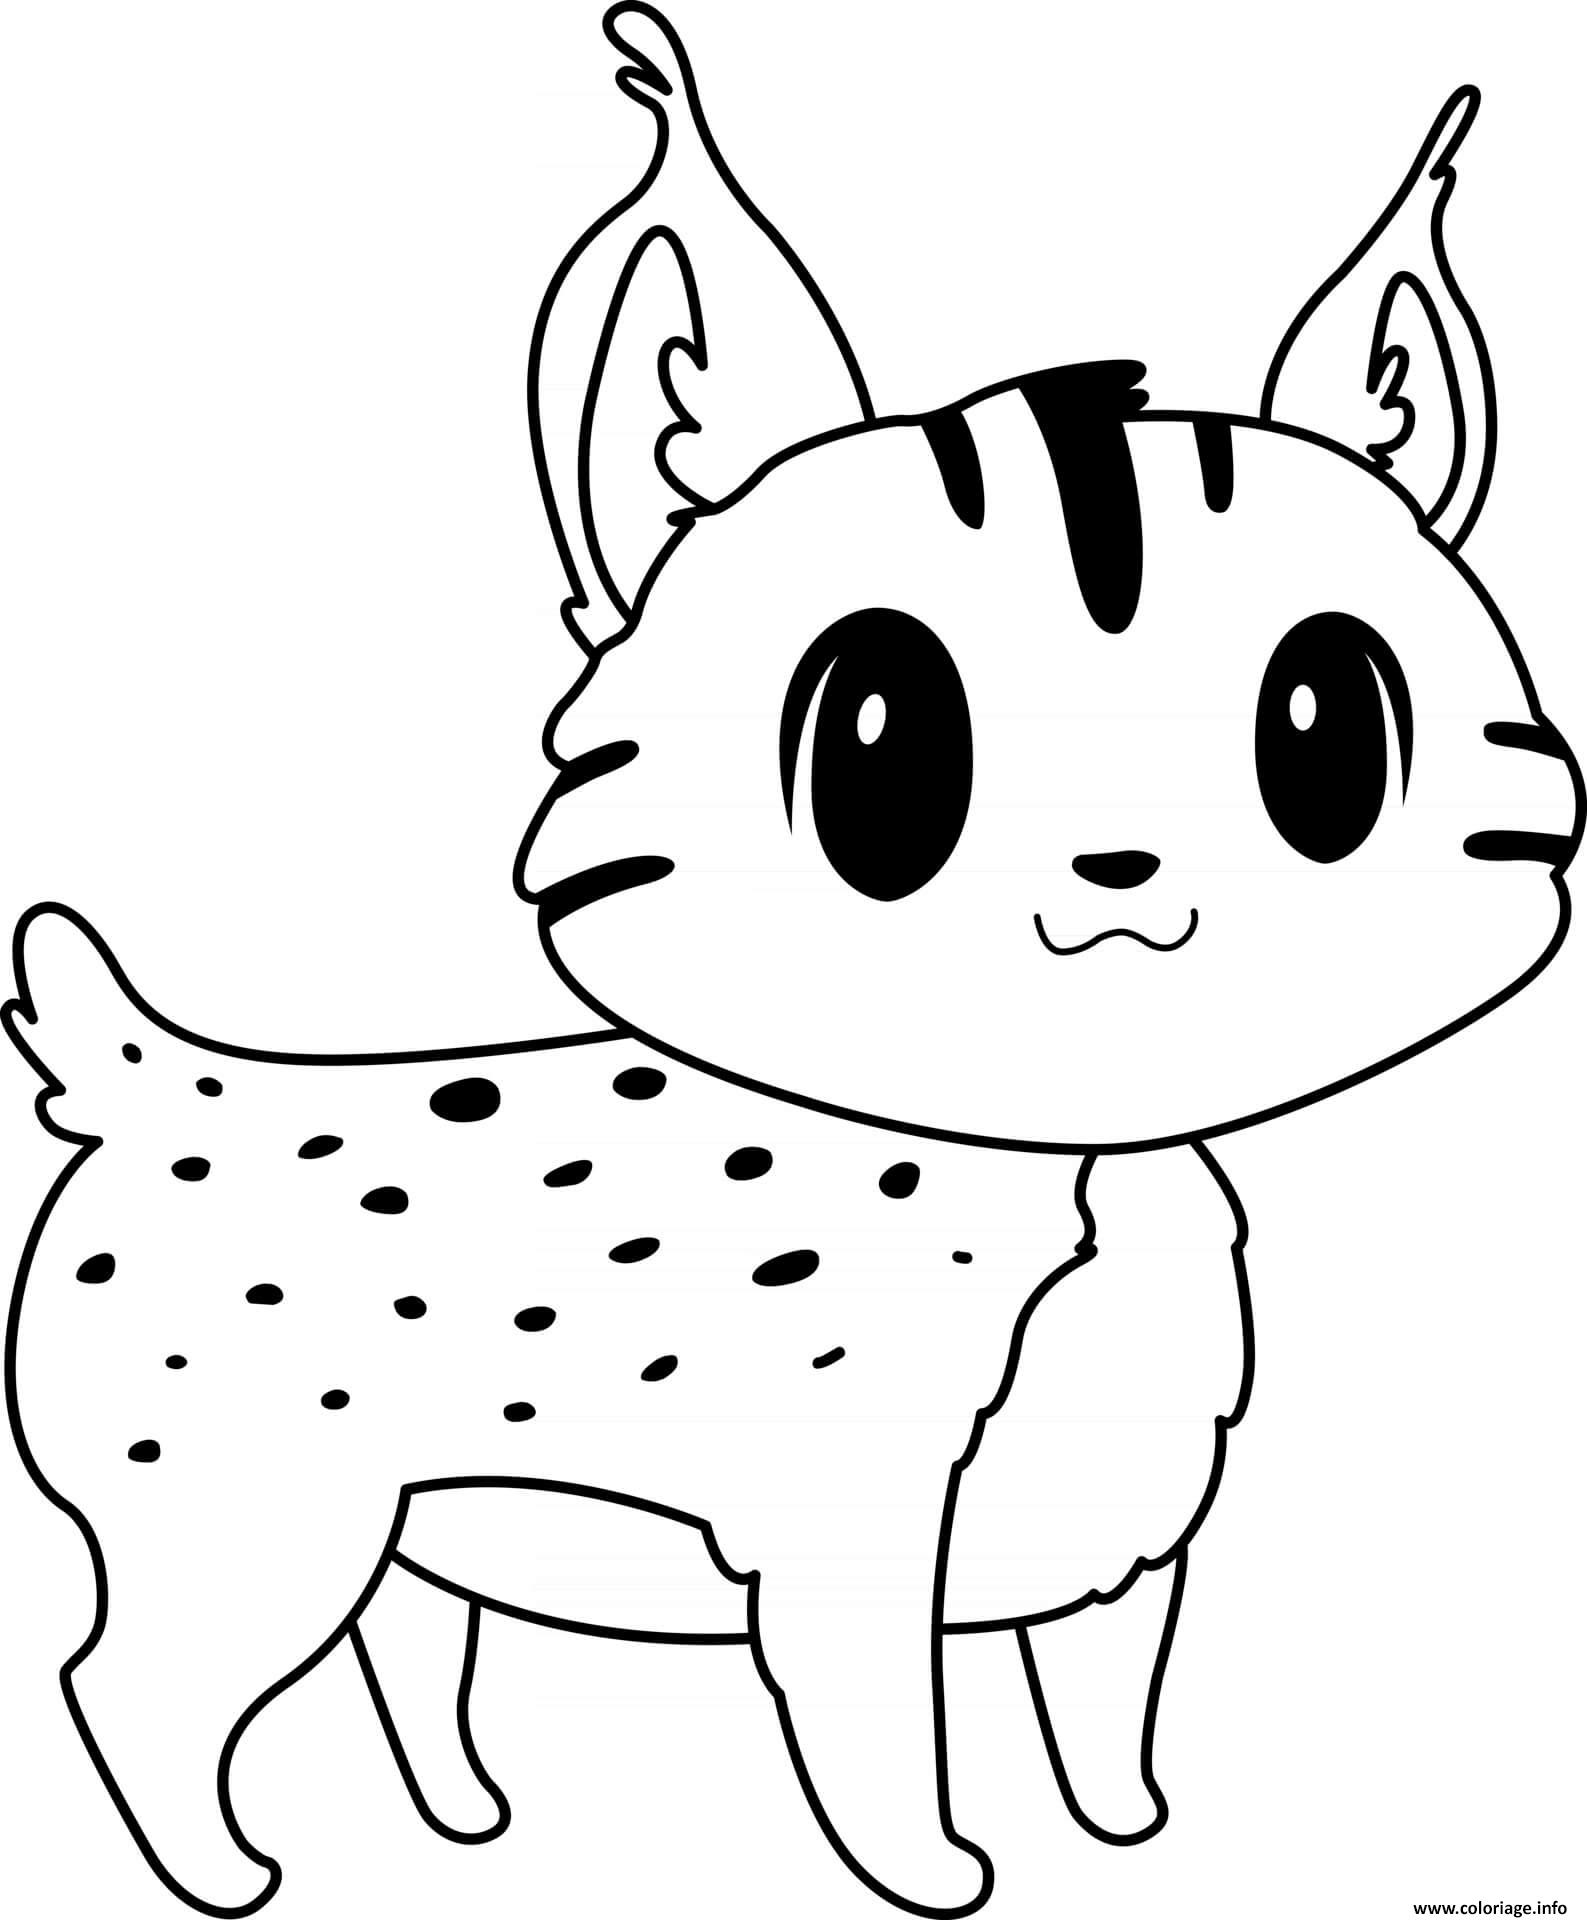 Dessin lynx gris polaire animal felin Coloriage Gratuit à Imprimer